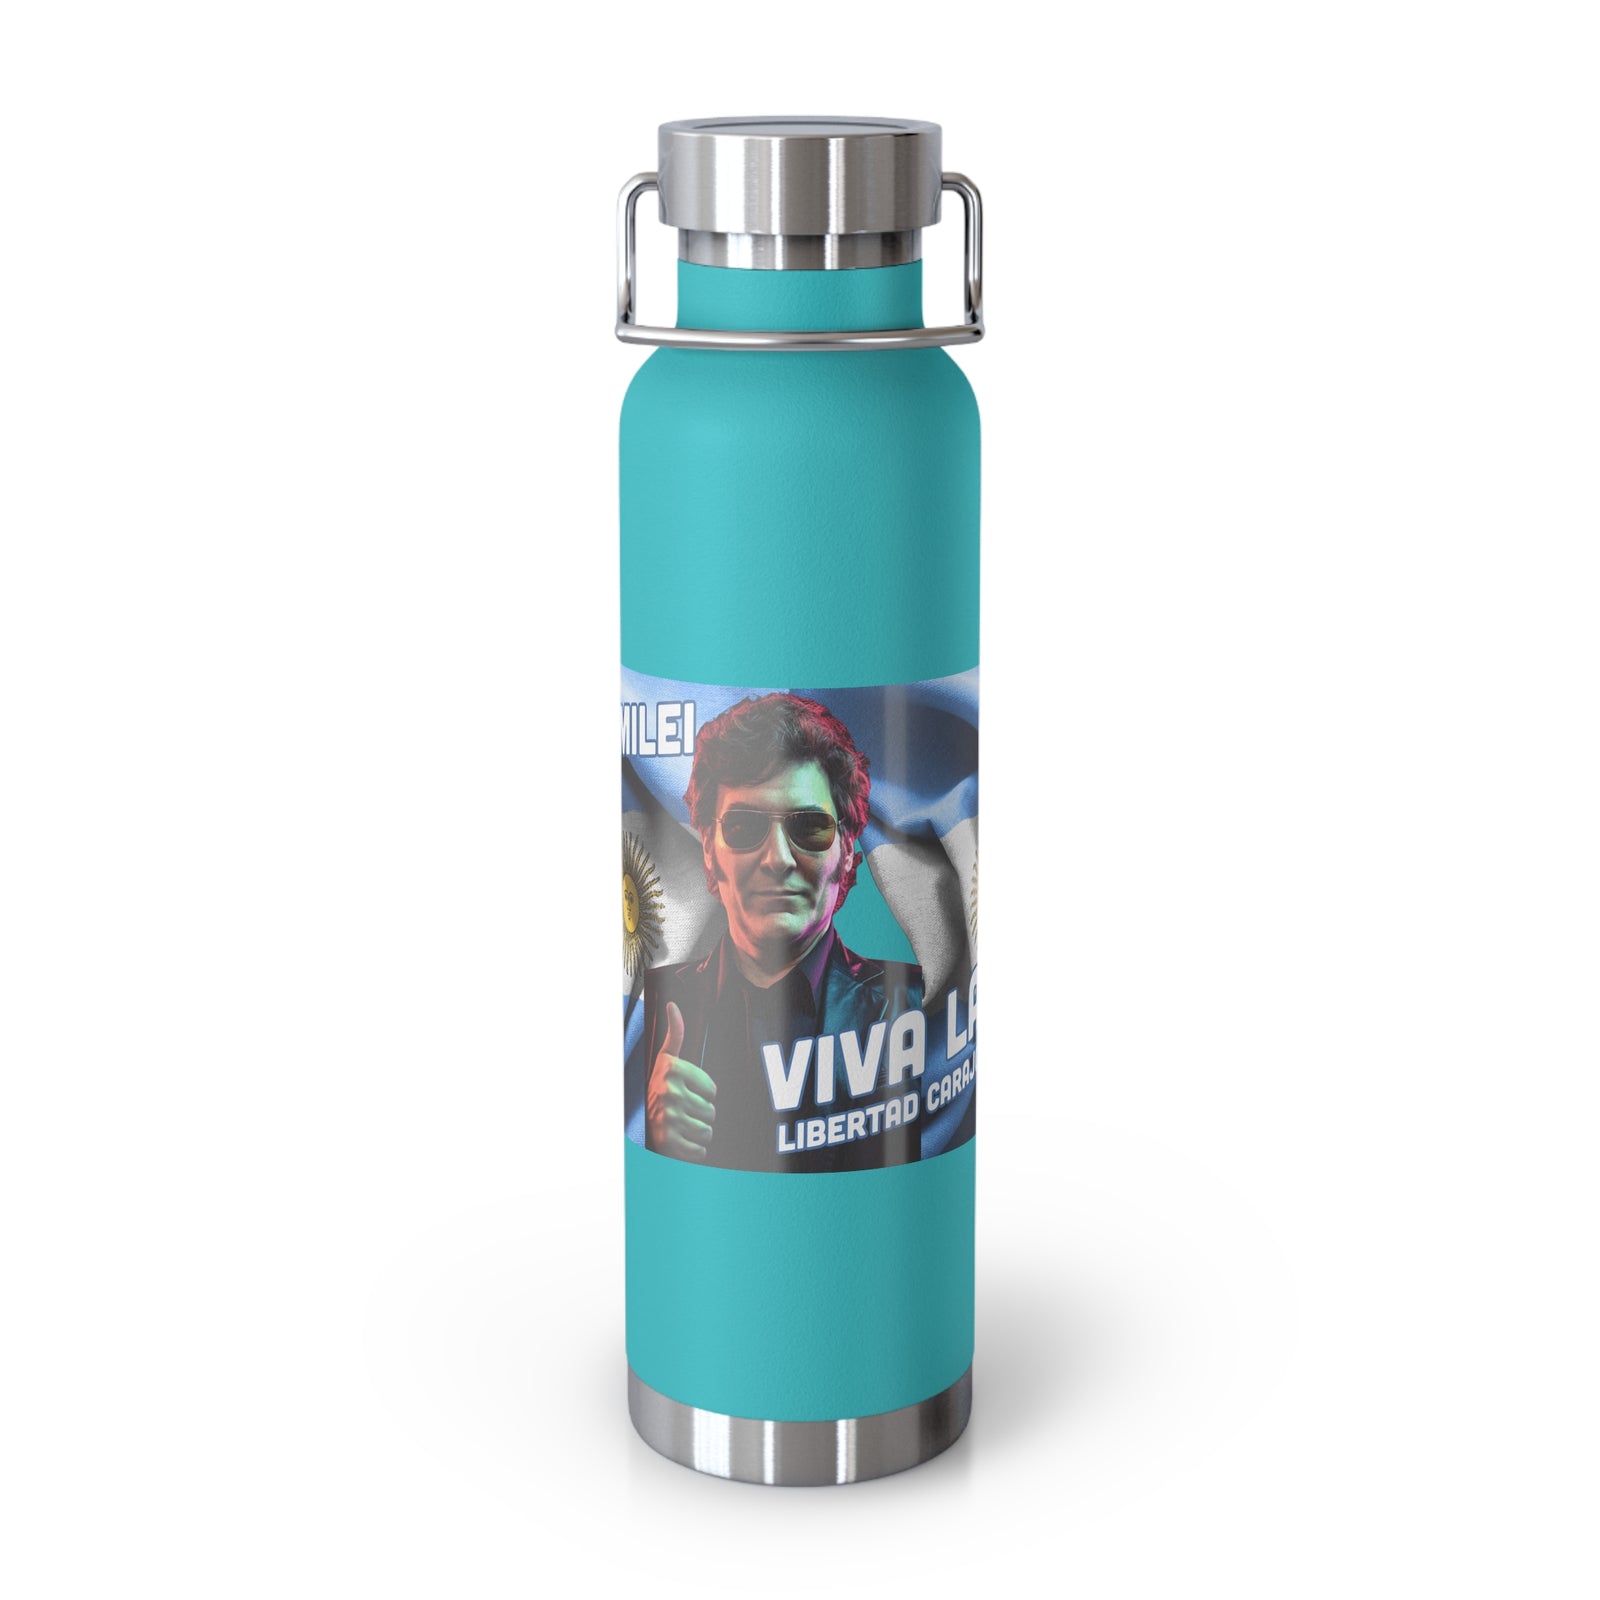 Javier Milei Copper Vacuum Insulated Bottle, 22oz